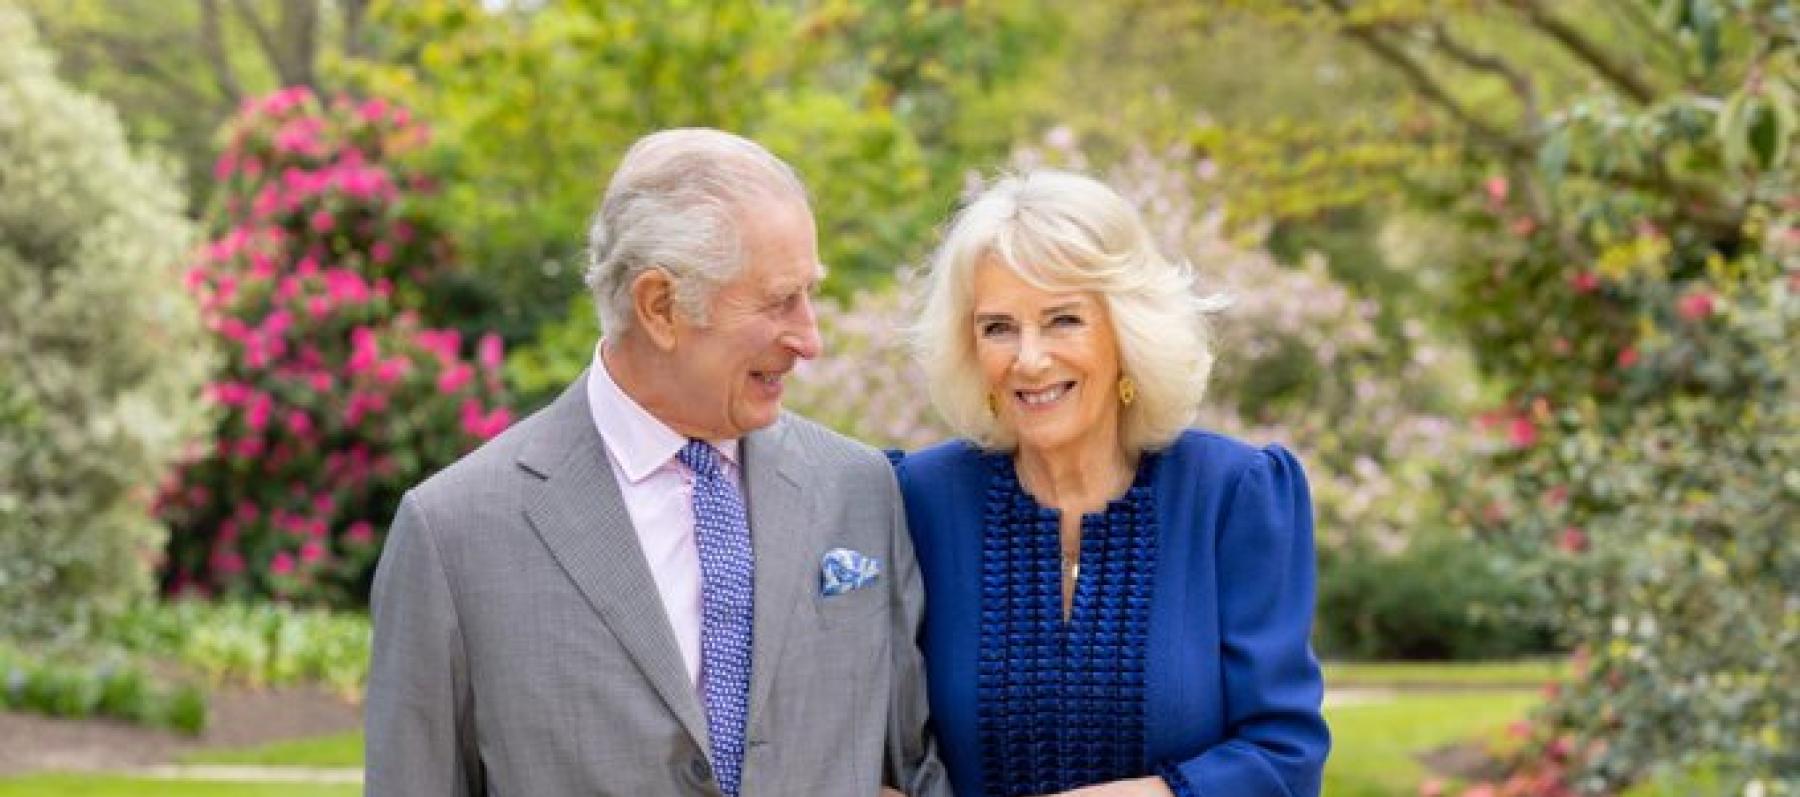 الملك تشارلز وزوجته كاميلا الملكة القرينة  - صورة من حساب The Royal Family على إكس